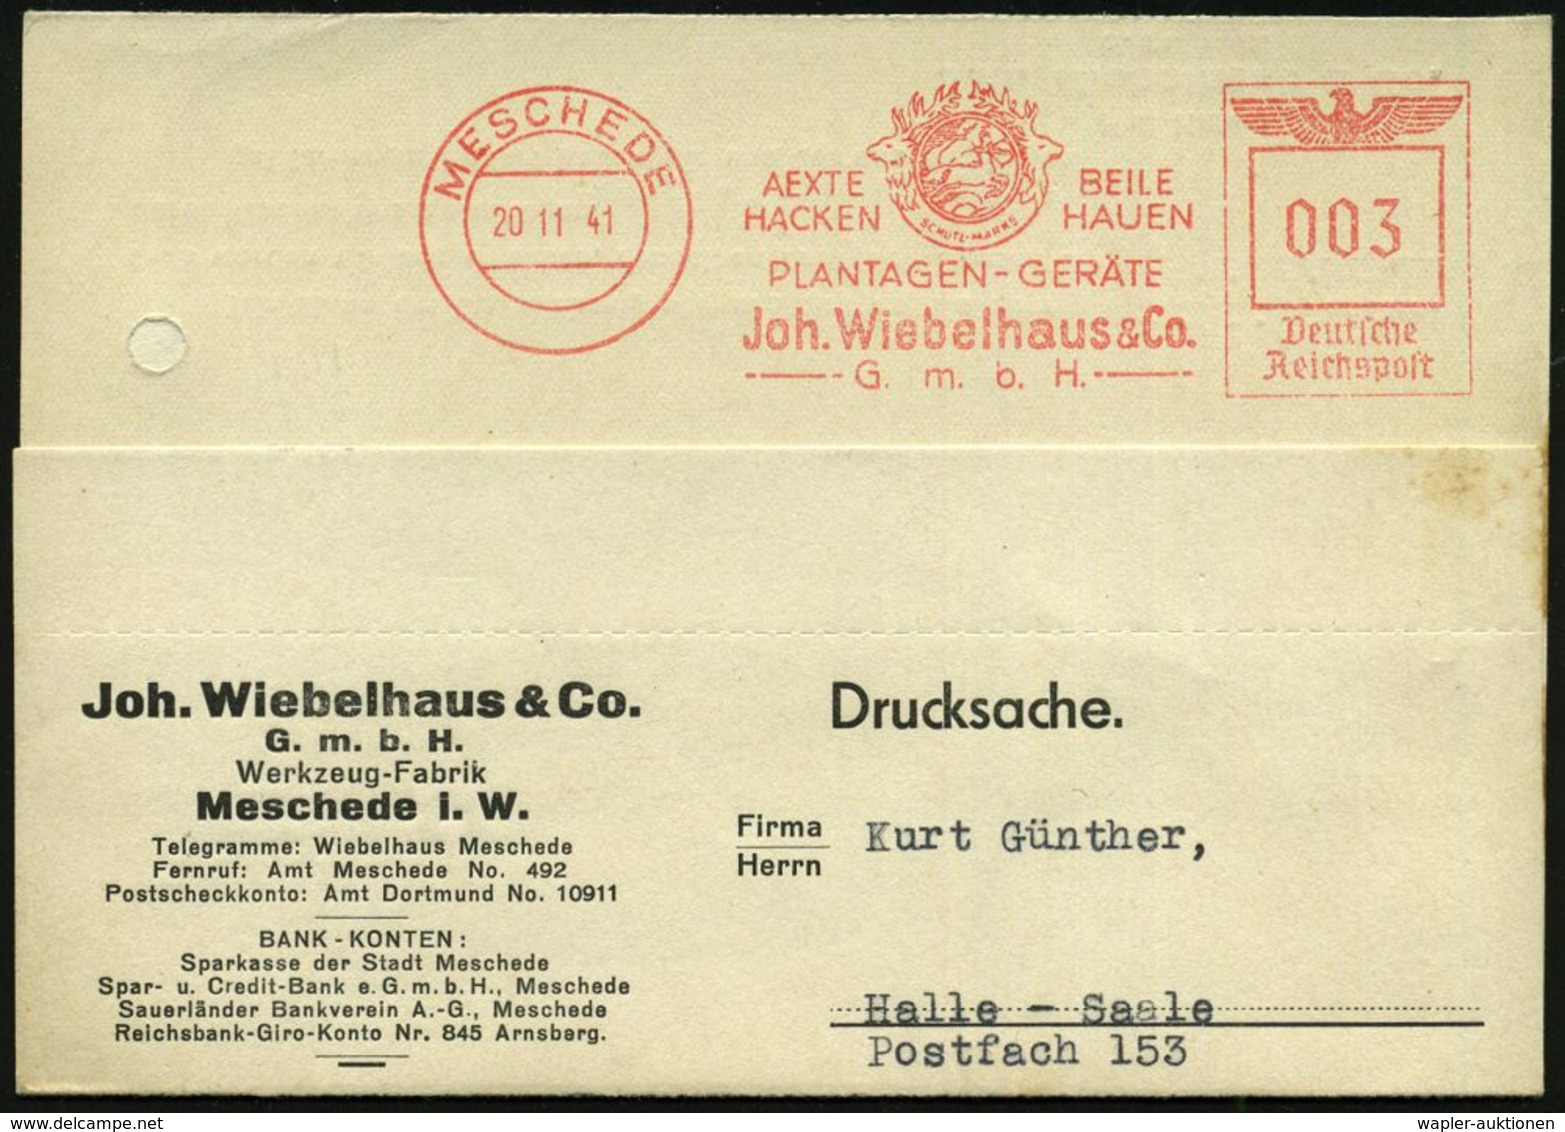 MESCHEDE/ AEXTE../ PLANTAGEN-GERÄTE/ Joh.Wiebelhaus & Co/ GmbH 1941 (20.11.) Seltener AFS = Jagdgöttin Diana-Artemis Als - Schieten (Wapens)